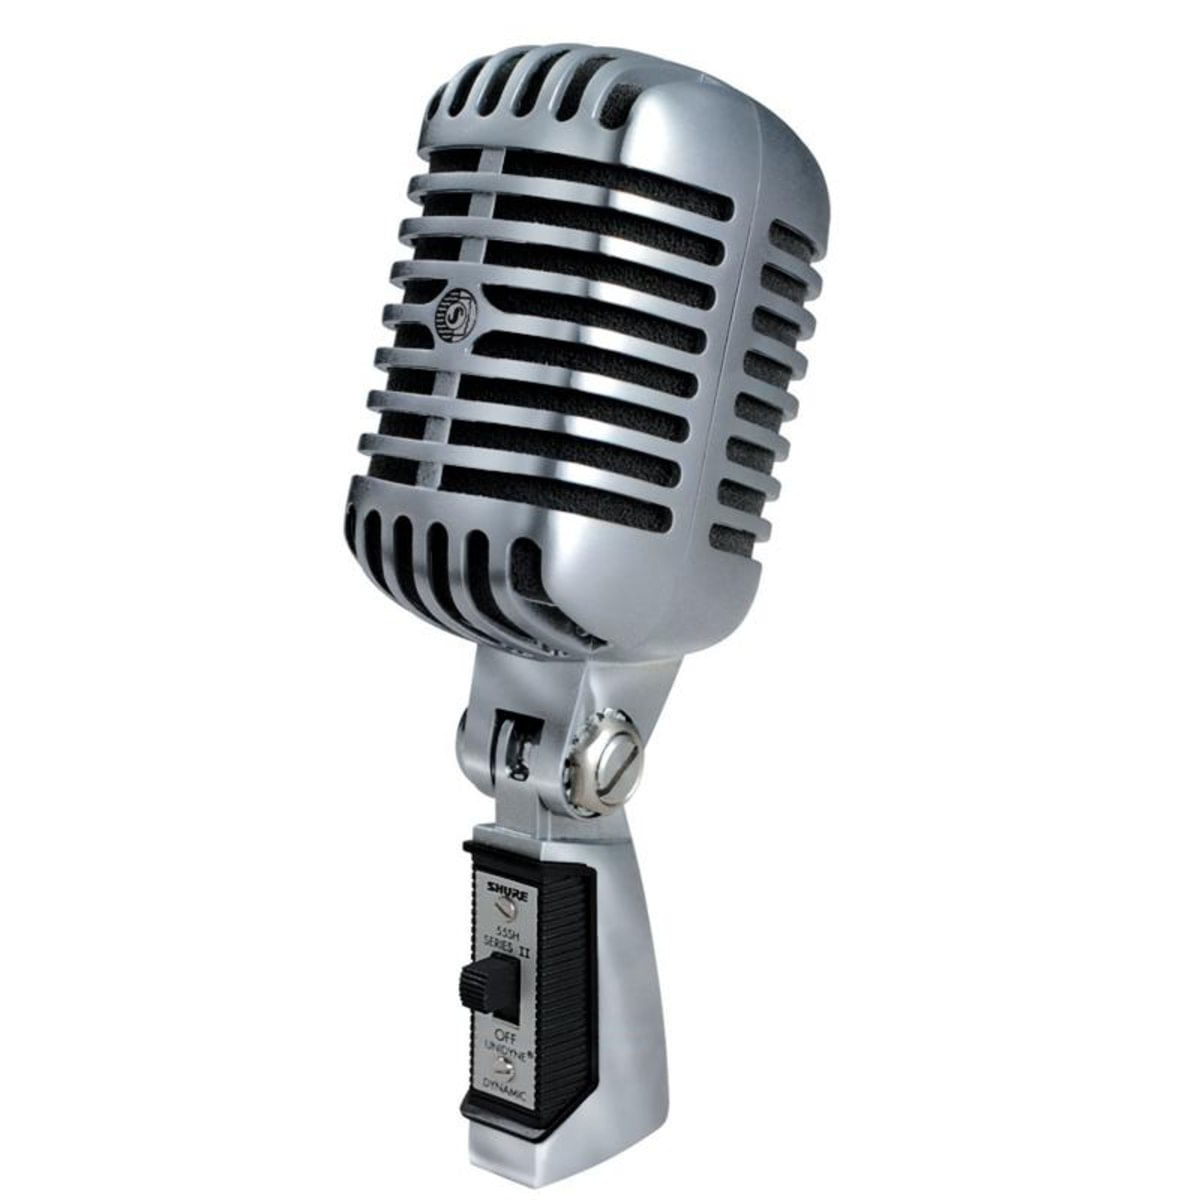 5. Microfone Clássico 55SH SERIES - Shure